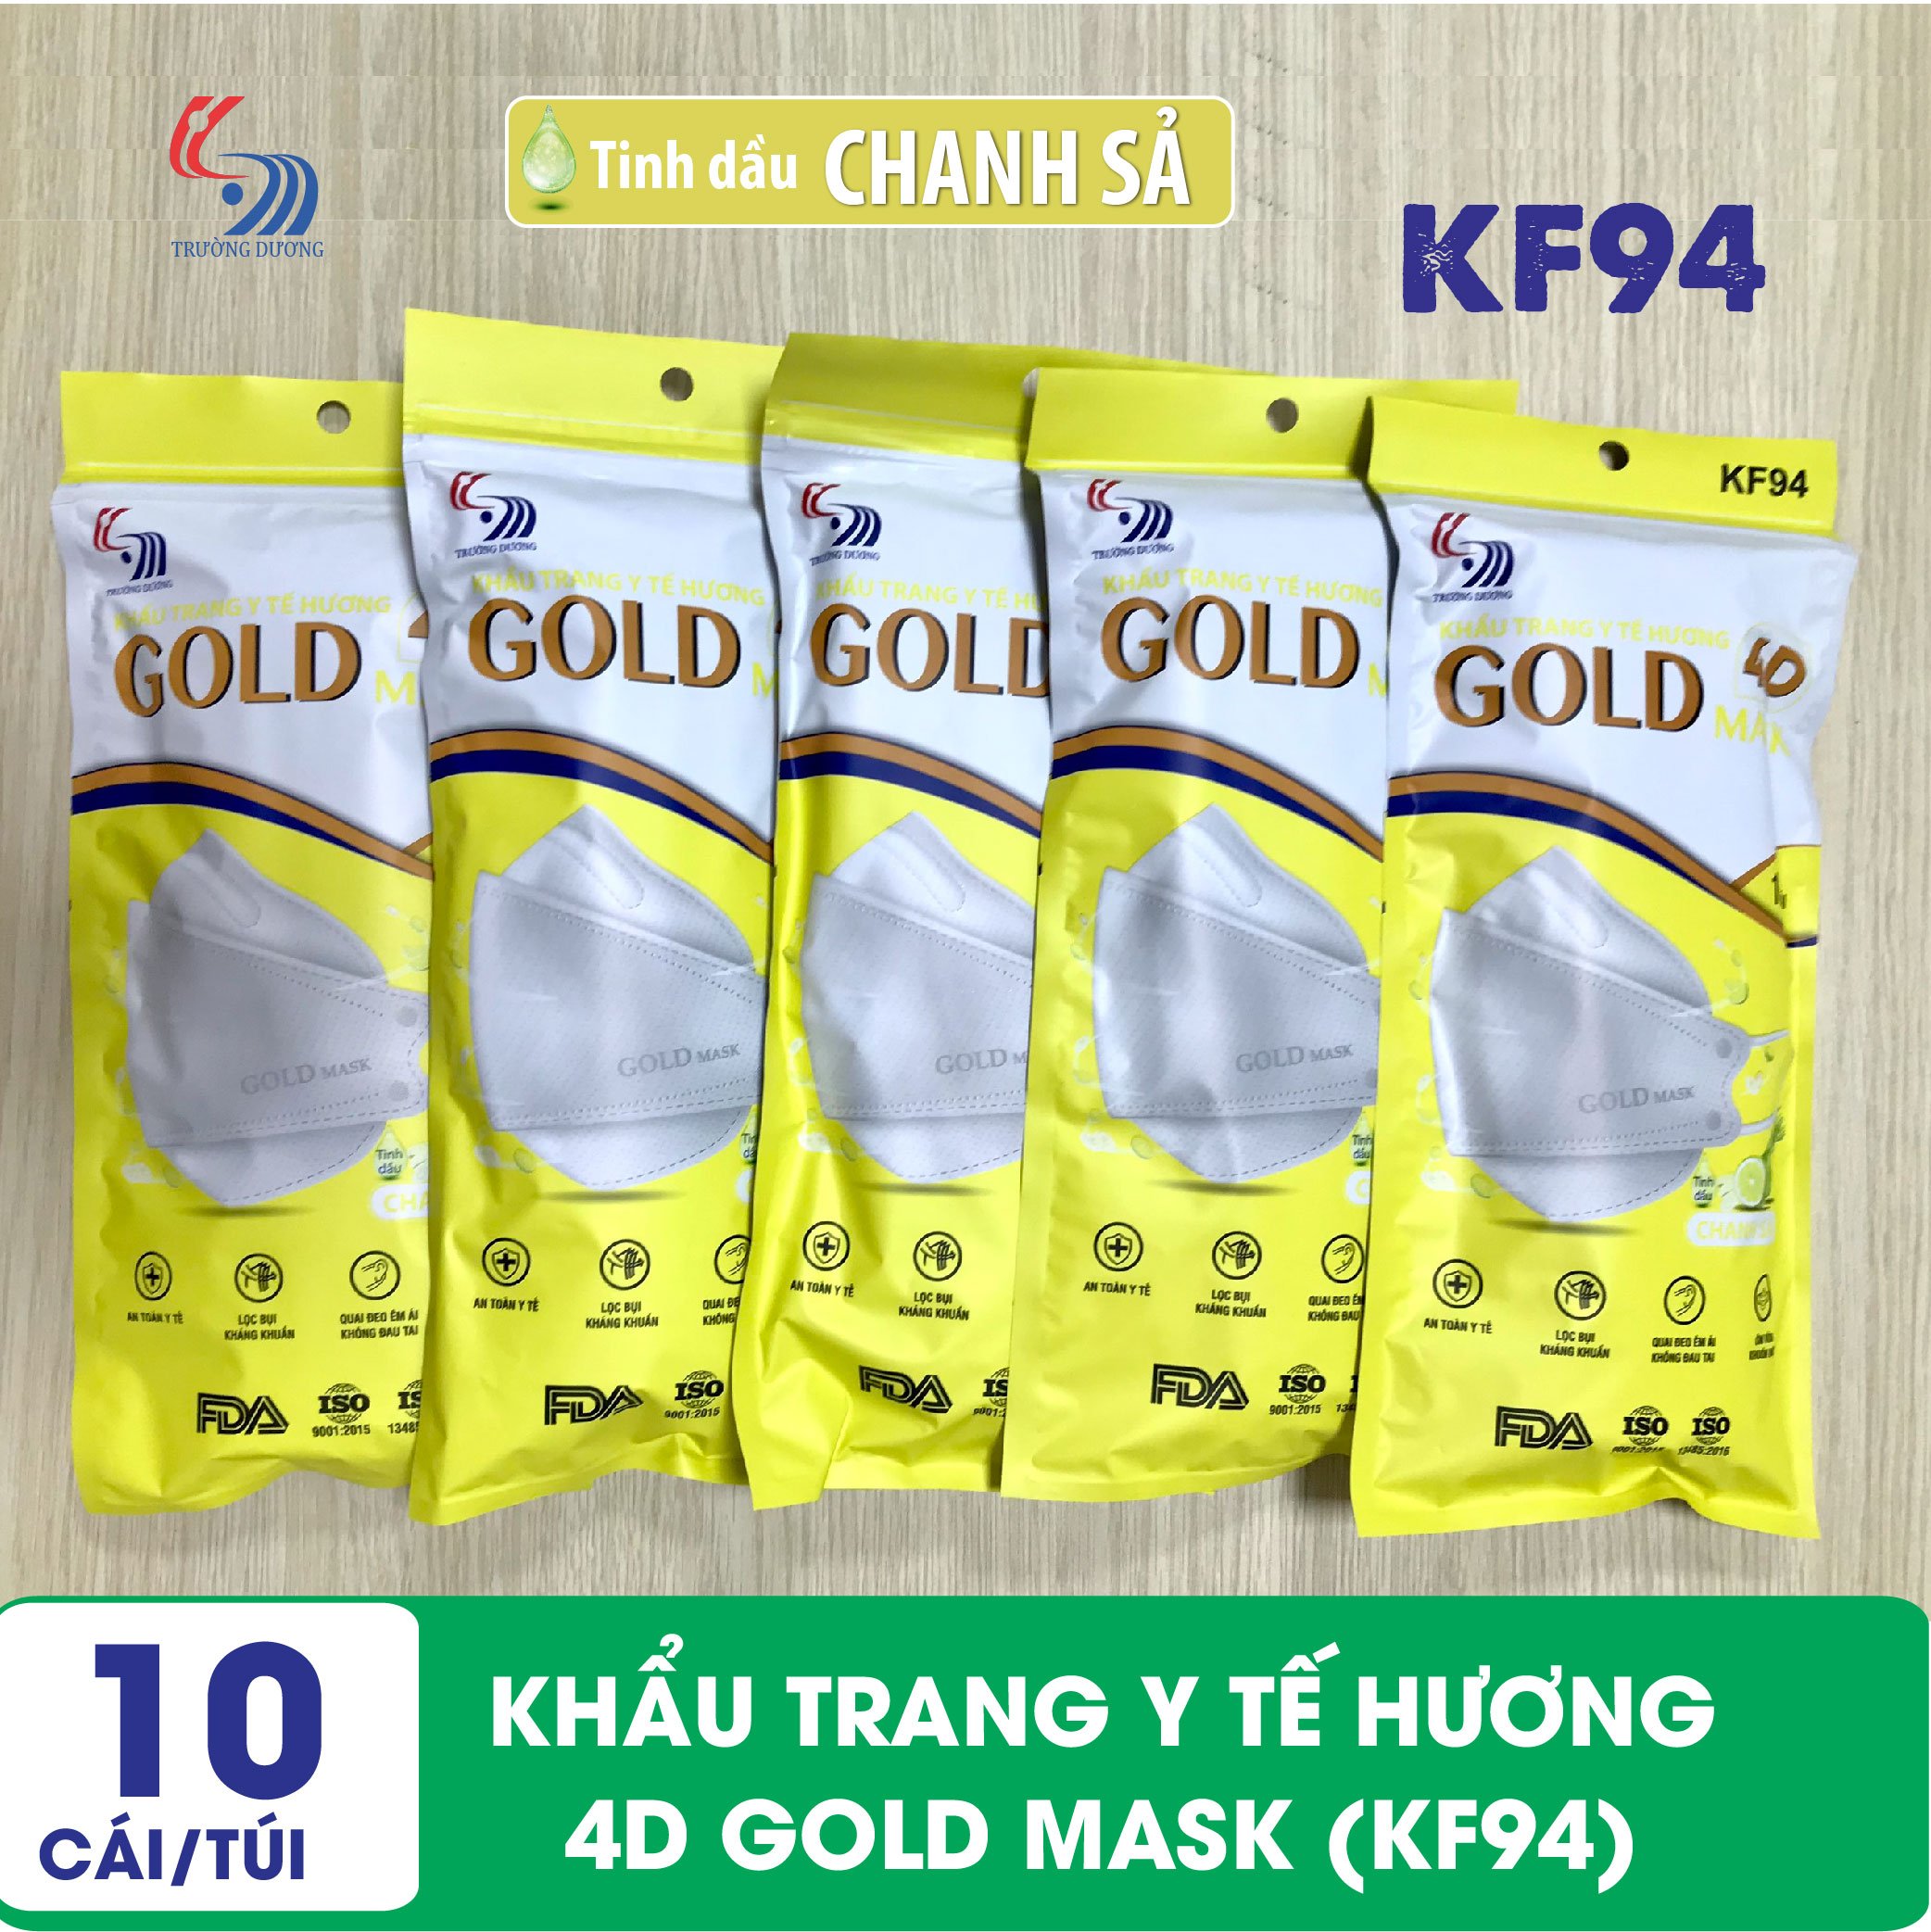 Khẩu trang y tế Hương tinh dầu Chanh Sả 4D Gold Mask (KF94) - Túi 10 chiếc